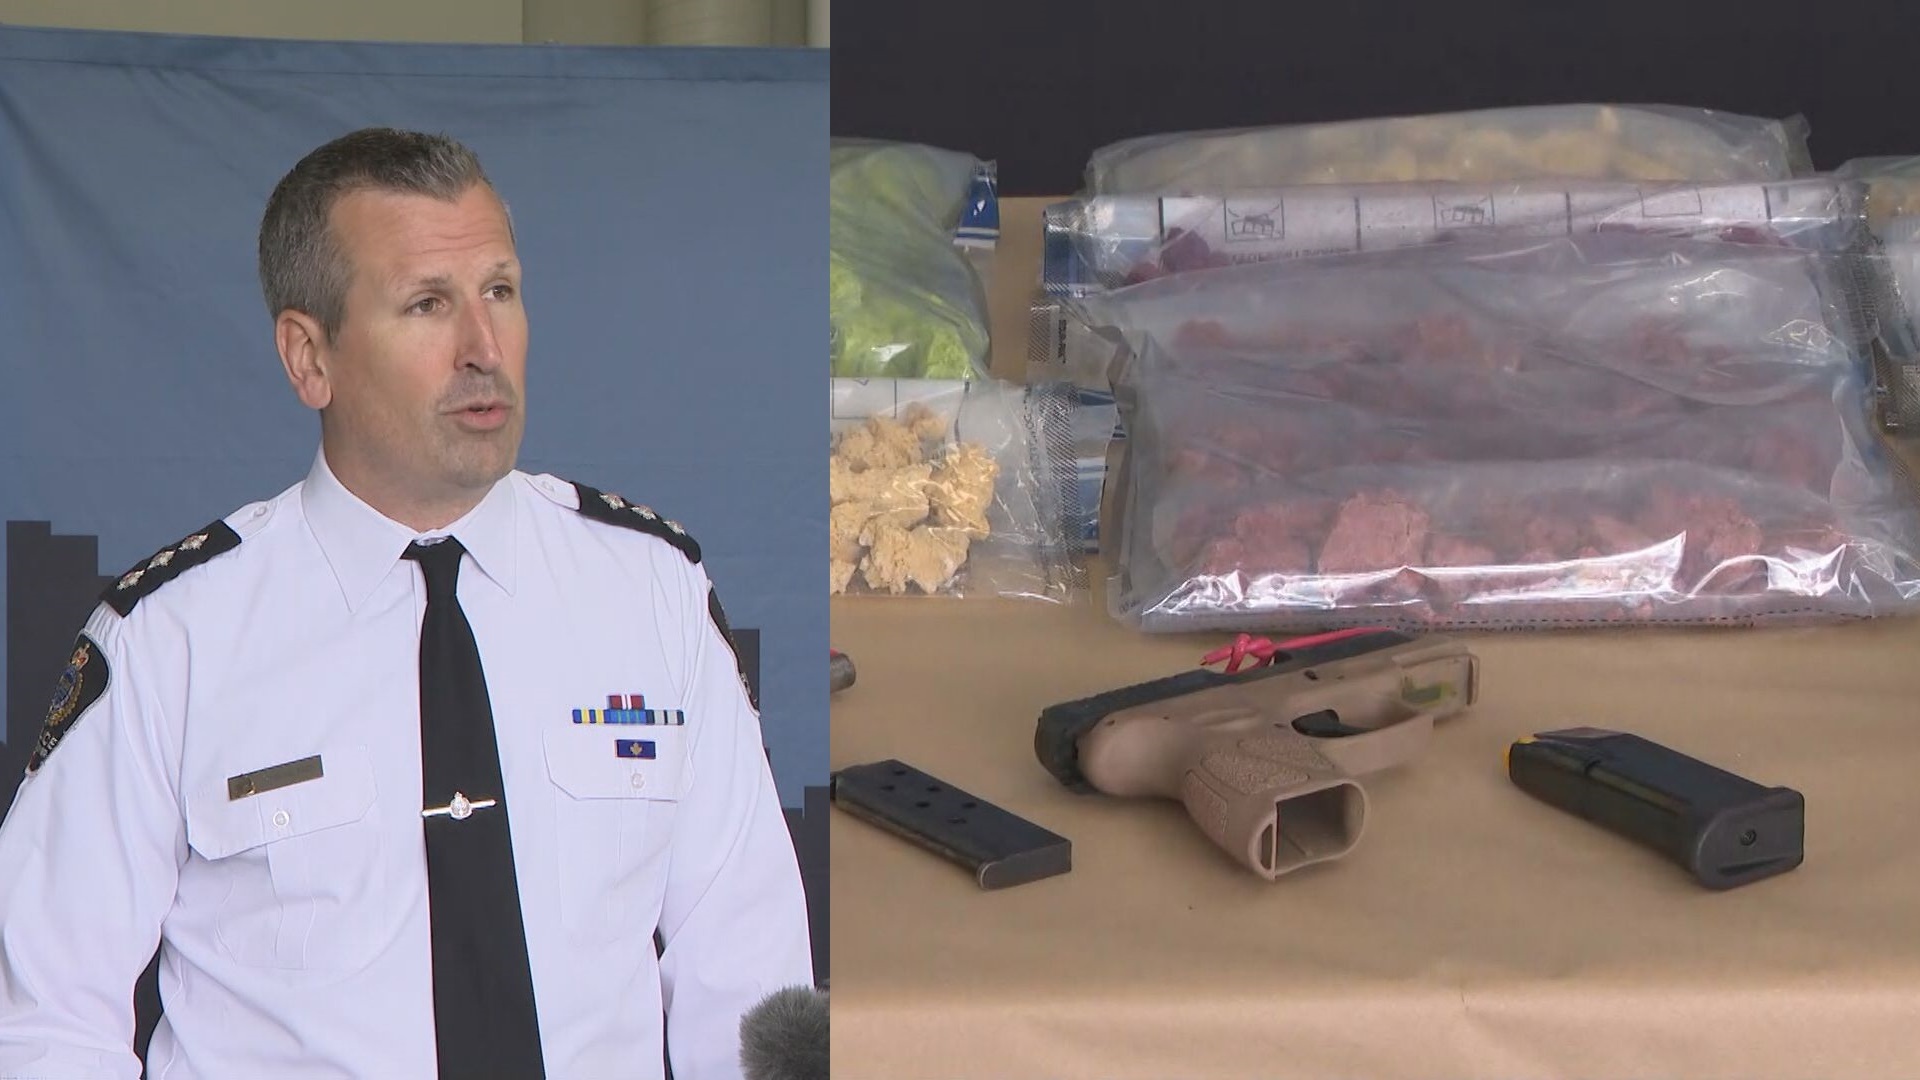 Drugs seized after investigation into Quebec-based crime group: VPD